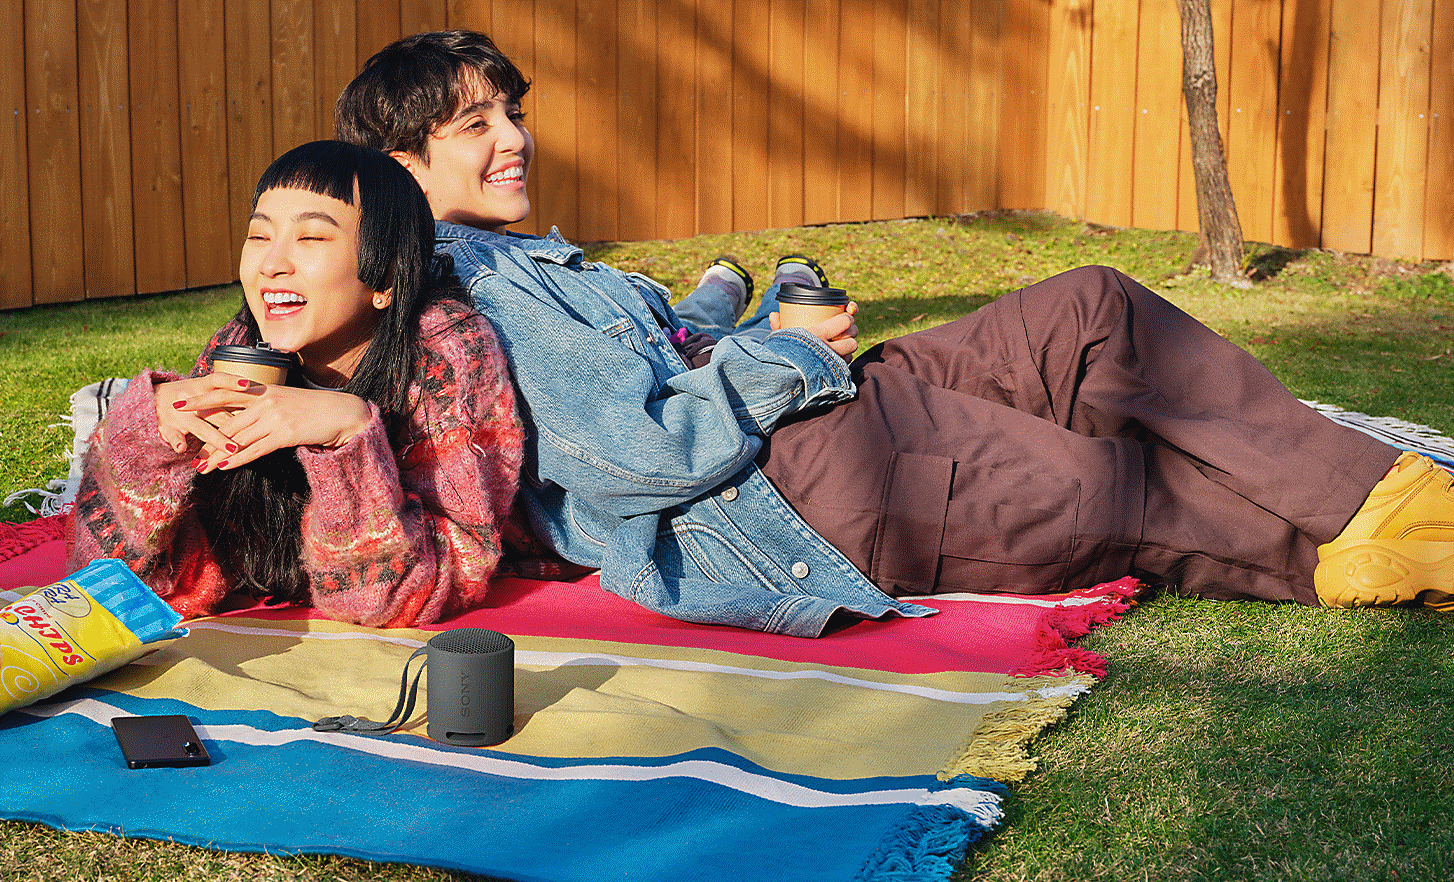 Slika dvoje ljudi u vrtu, leže jedno do drugog na prostirci za piknik, slušaju crni zvučnik SRS-XB100